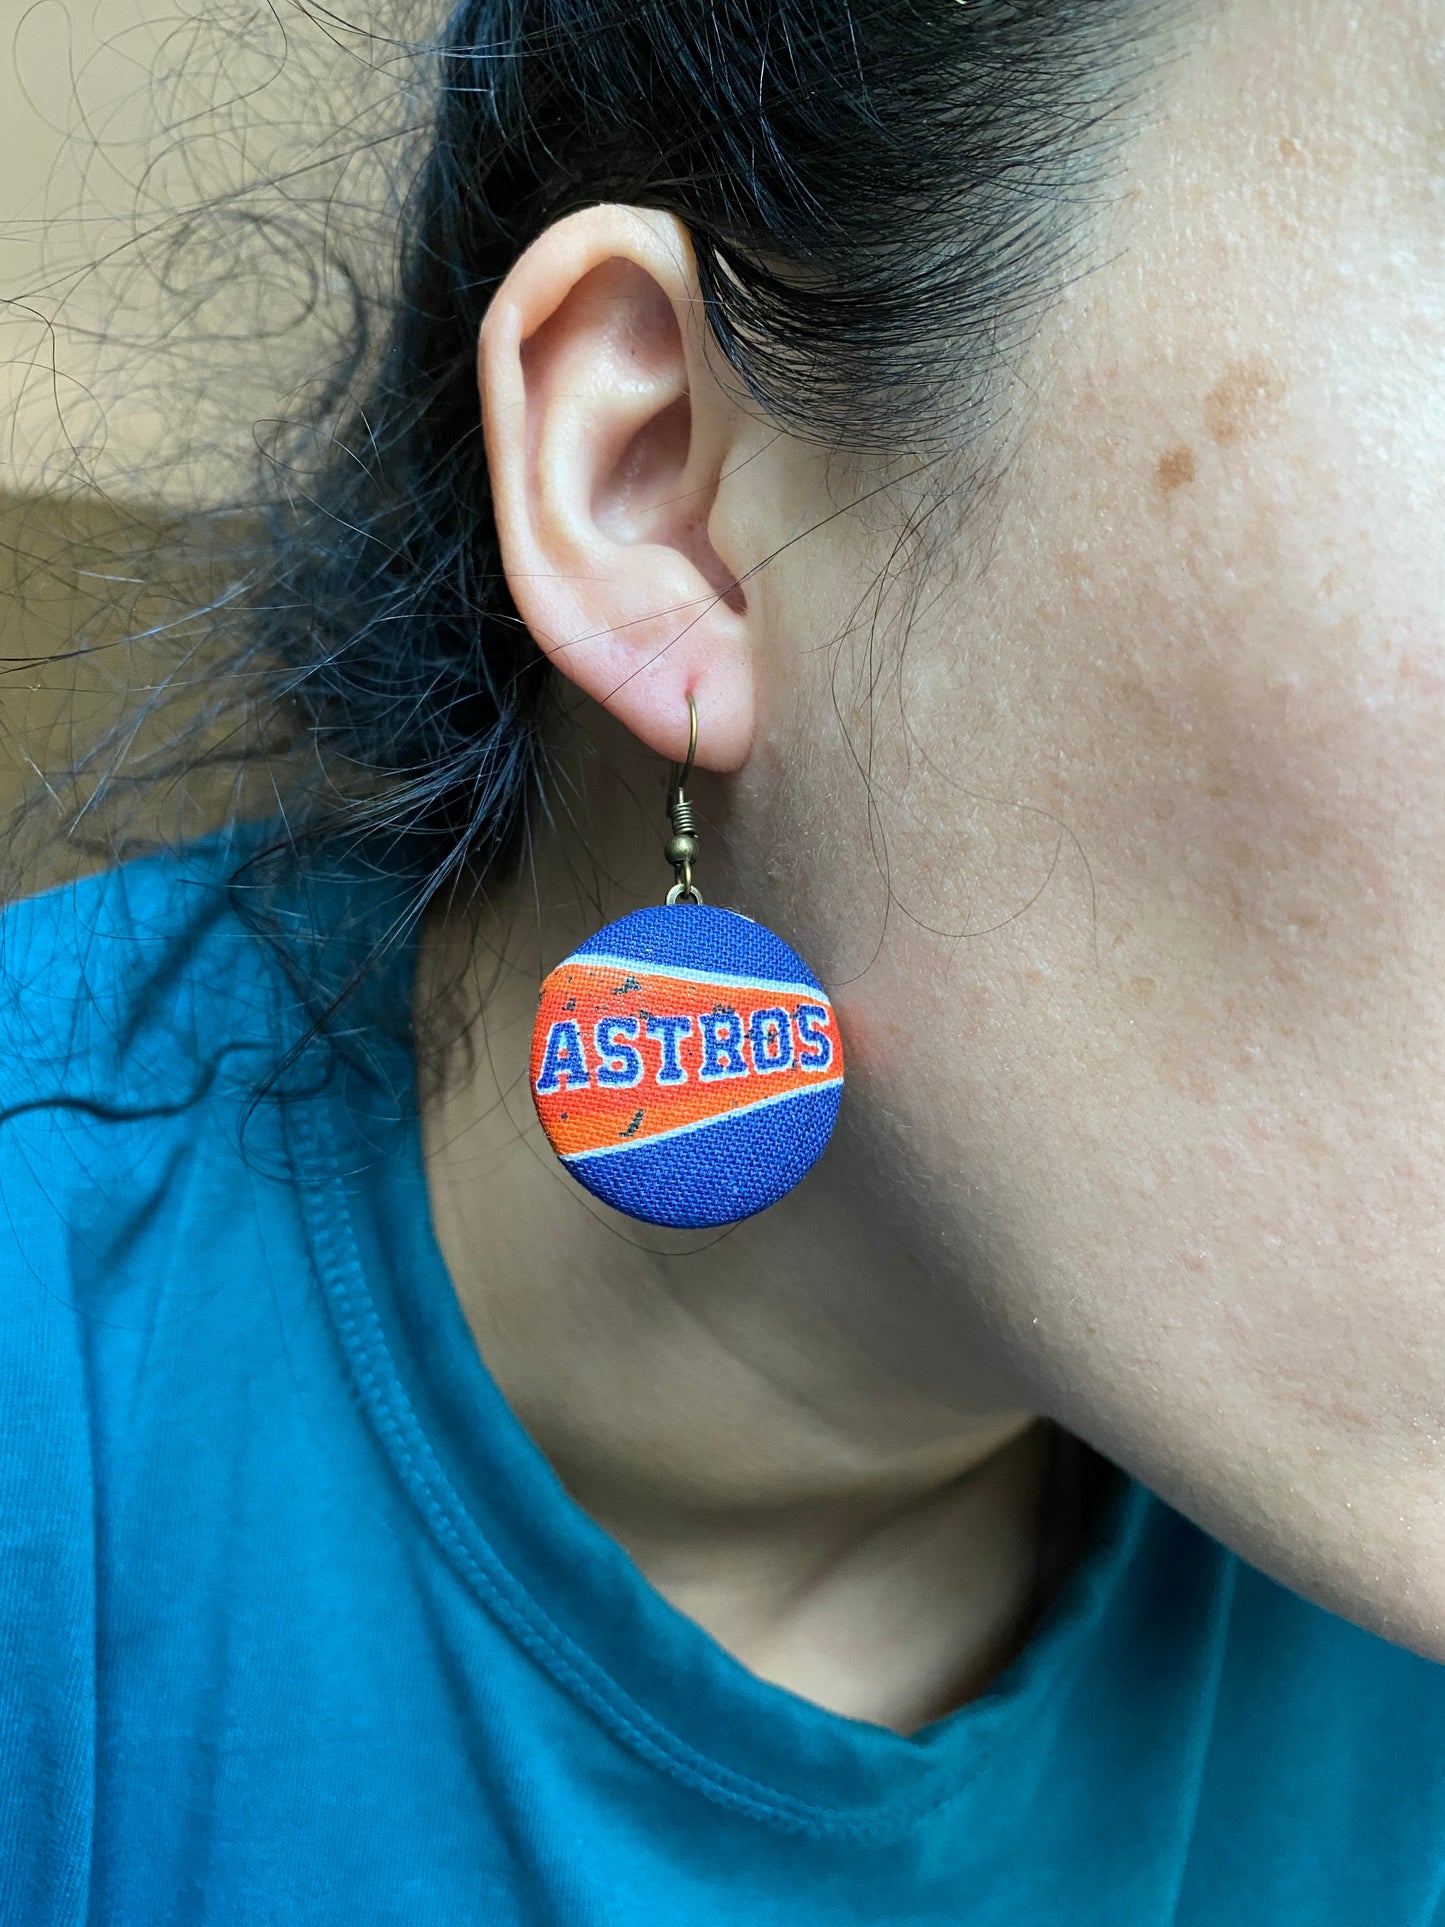 Houston Astros Dangle earrings gift